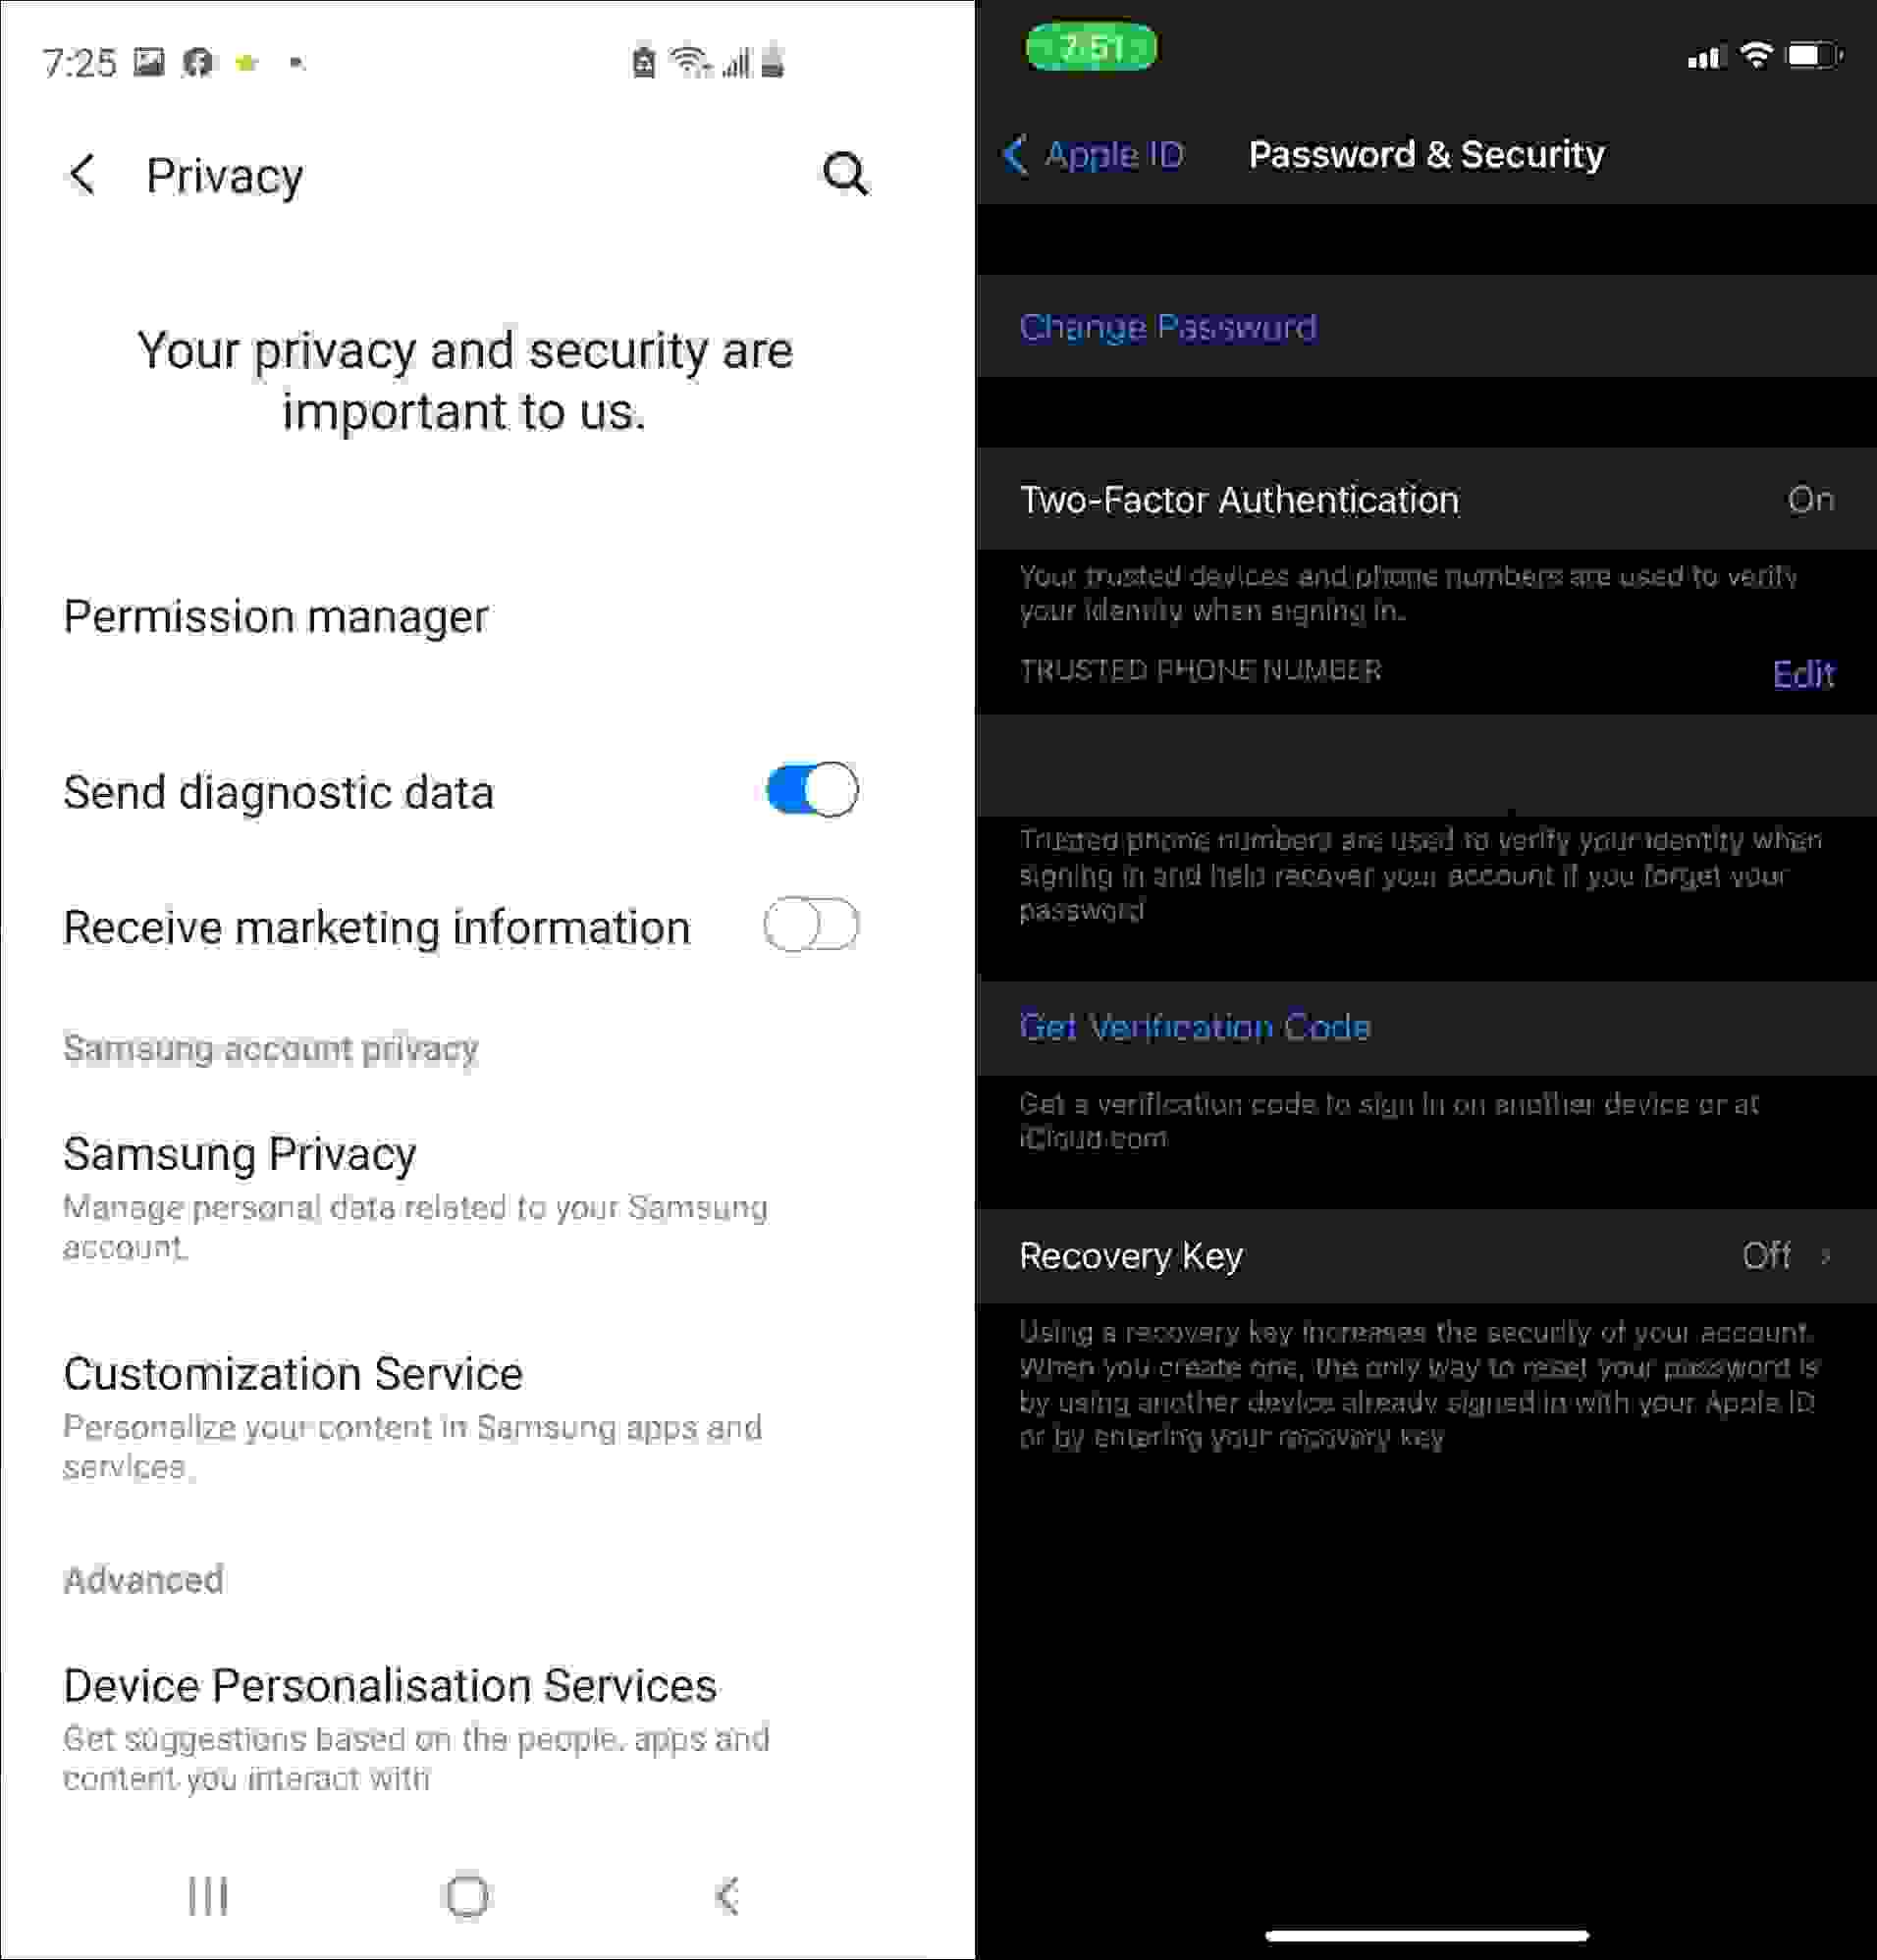 ميزات الأمان في أي أو إس (iOS) مقابل ميزات الأمان في أندرويد (Android)